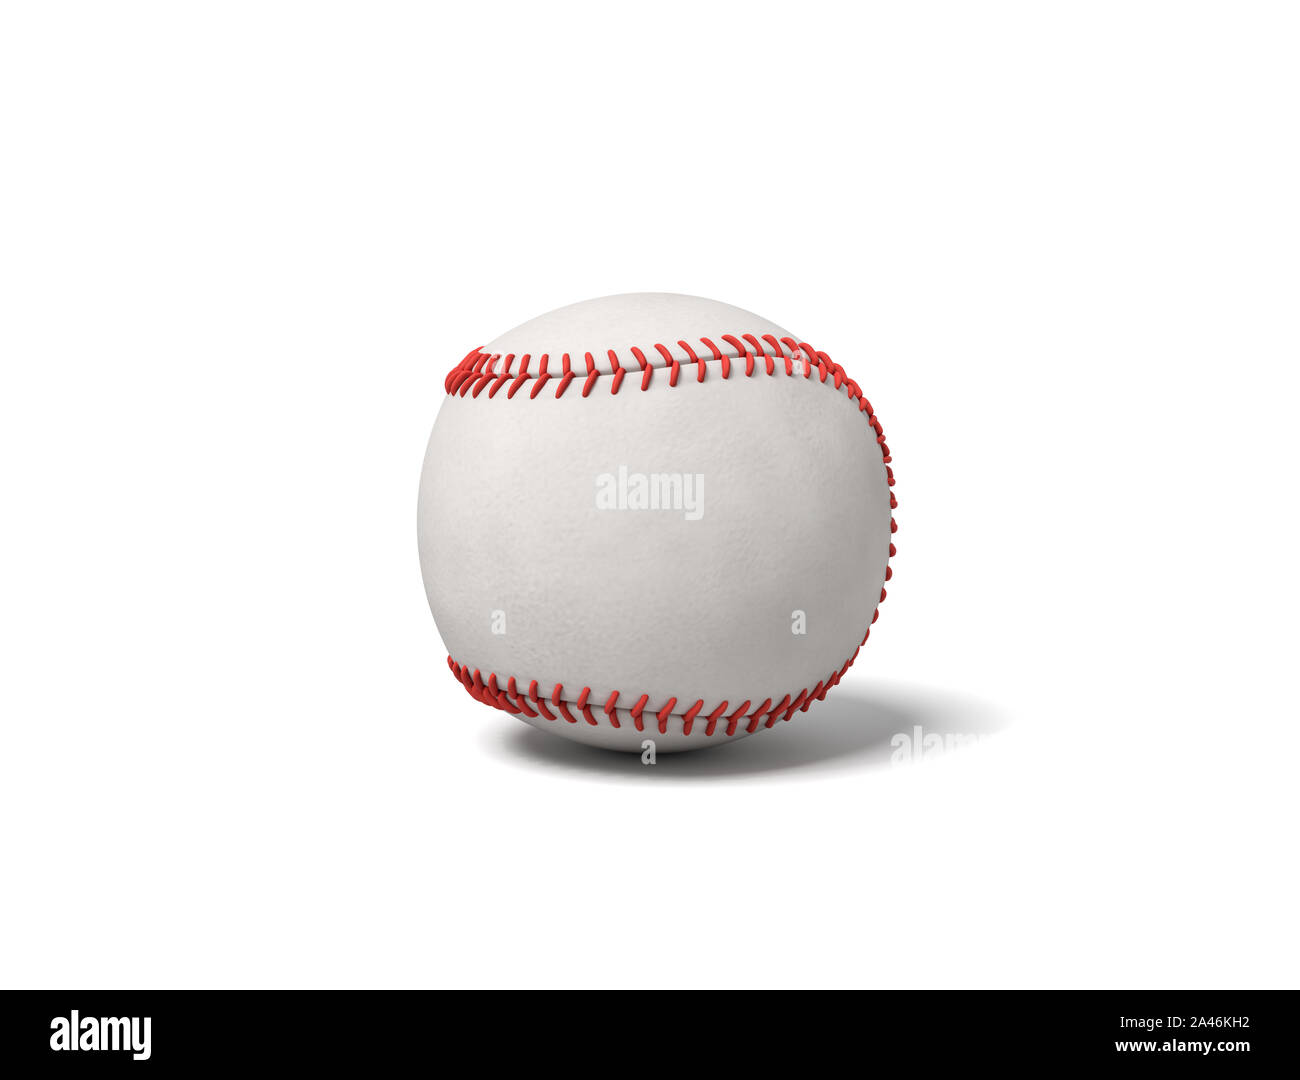 3D-Rendering für eine einzelne weiße Baseball mit roten Ziernähten werfen  einen Schatten auf weißem Hintergrund. Sportgeräte. Baseball Spiel.  Amerikanischen Zeitvertreib Stockfotografie - Alamy